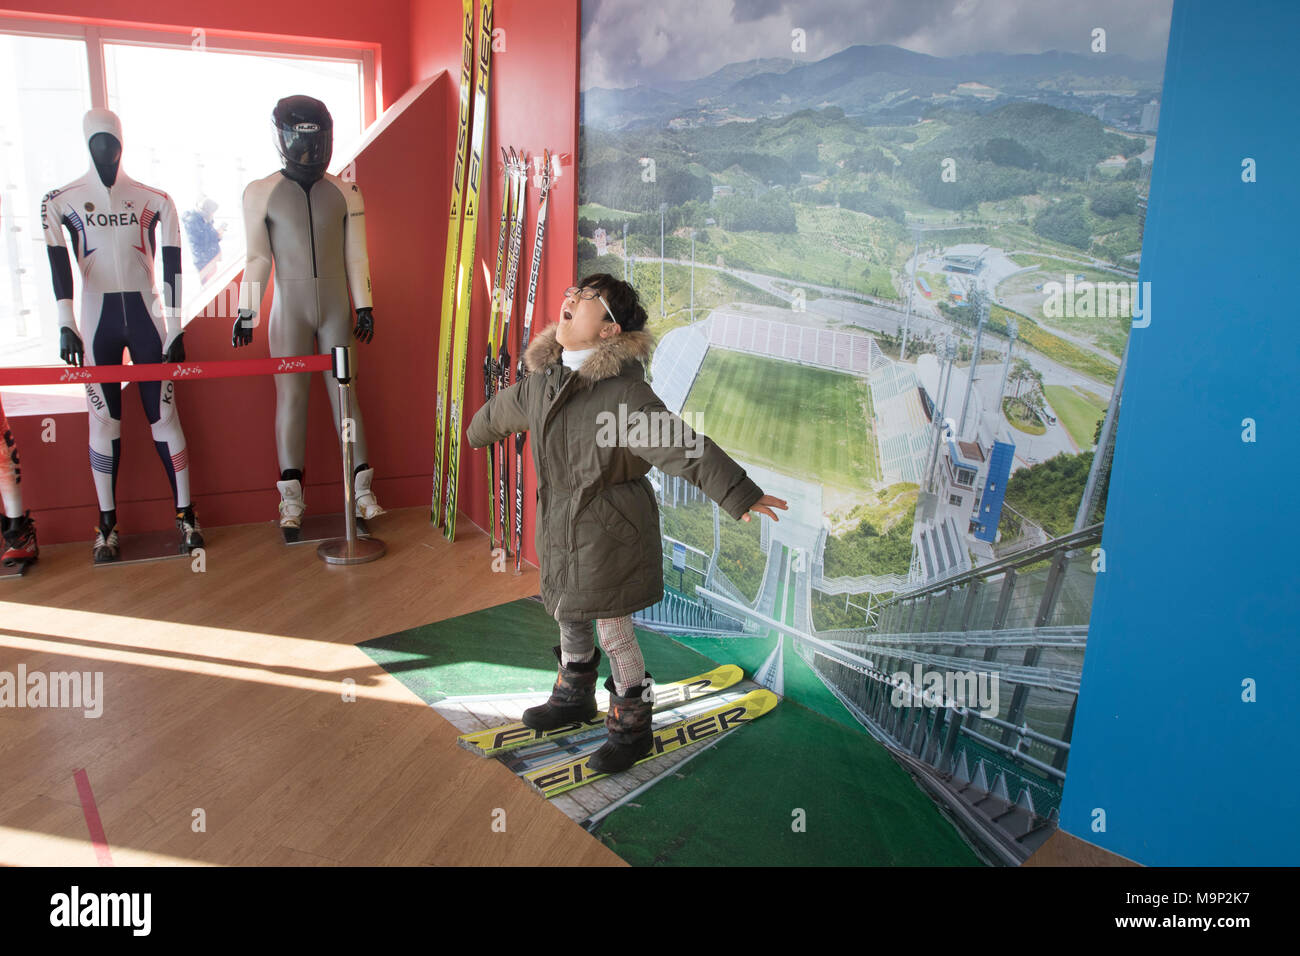 Un garçon à l'imaginaire il est battant lors d'un tremplin de saut à la tour de saut à ski Olympique Alpensia resort en Corée du Sud. L'Alpensia Resort est une station de ski et une attraction touristique. Il est situé sur le territoire du canton de Daegwallyeong-myeon, dans le comté de Pyeongchang, hébergeant les Jeux Olympiques d'hiver en février 2018. La station de ski est à environ 2,5 heures à partir de l'aéroport d'Incheon à Séoul ou en voiture, tous principalement d'autoroute. Alpensia possède six pistes de ski et snowboard, avec fonctionne jusqu'à 1.4 km (0,87 mi) long, pour les débutants et les skieurs avancés, et une zone réservée aux Banque D'Images